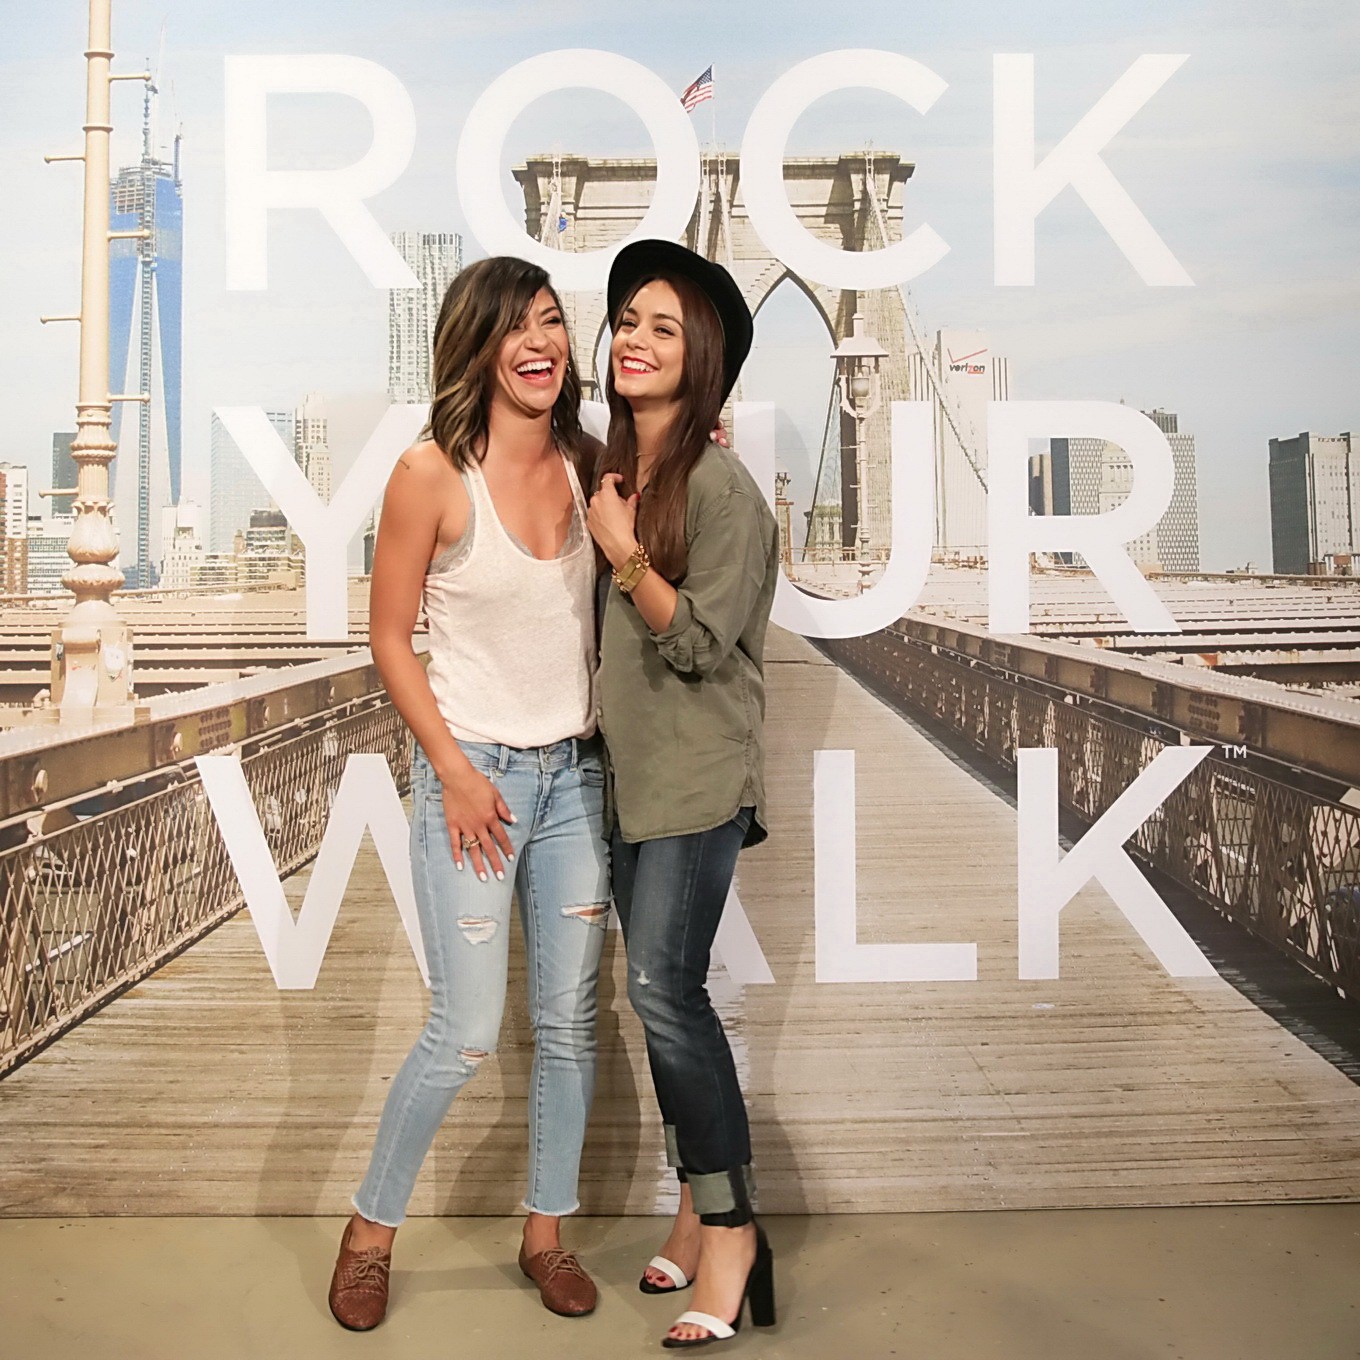 Jessica szohr e vanessa hudgens che si divertono all'evento rock your walk a new york
 #75222936